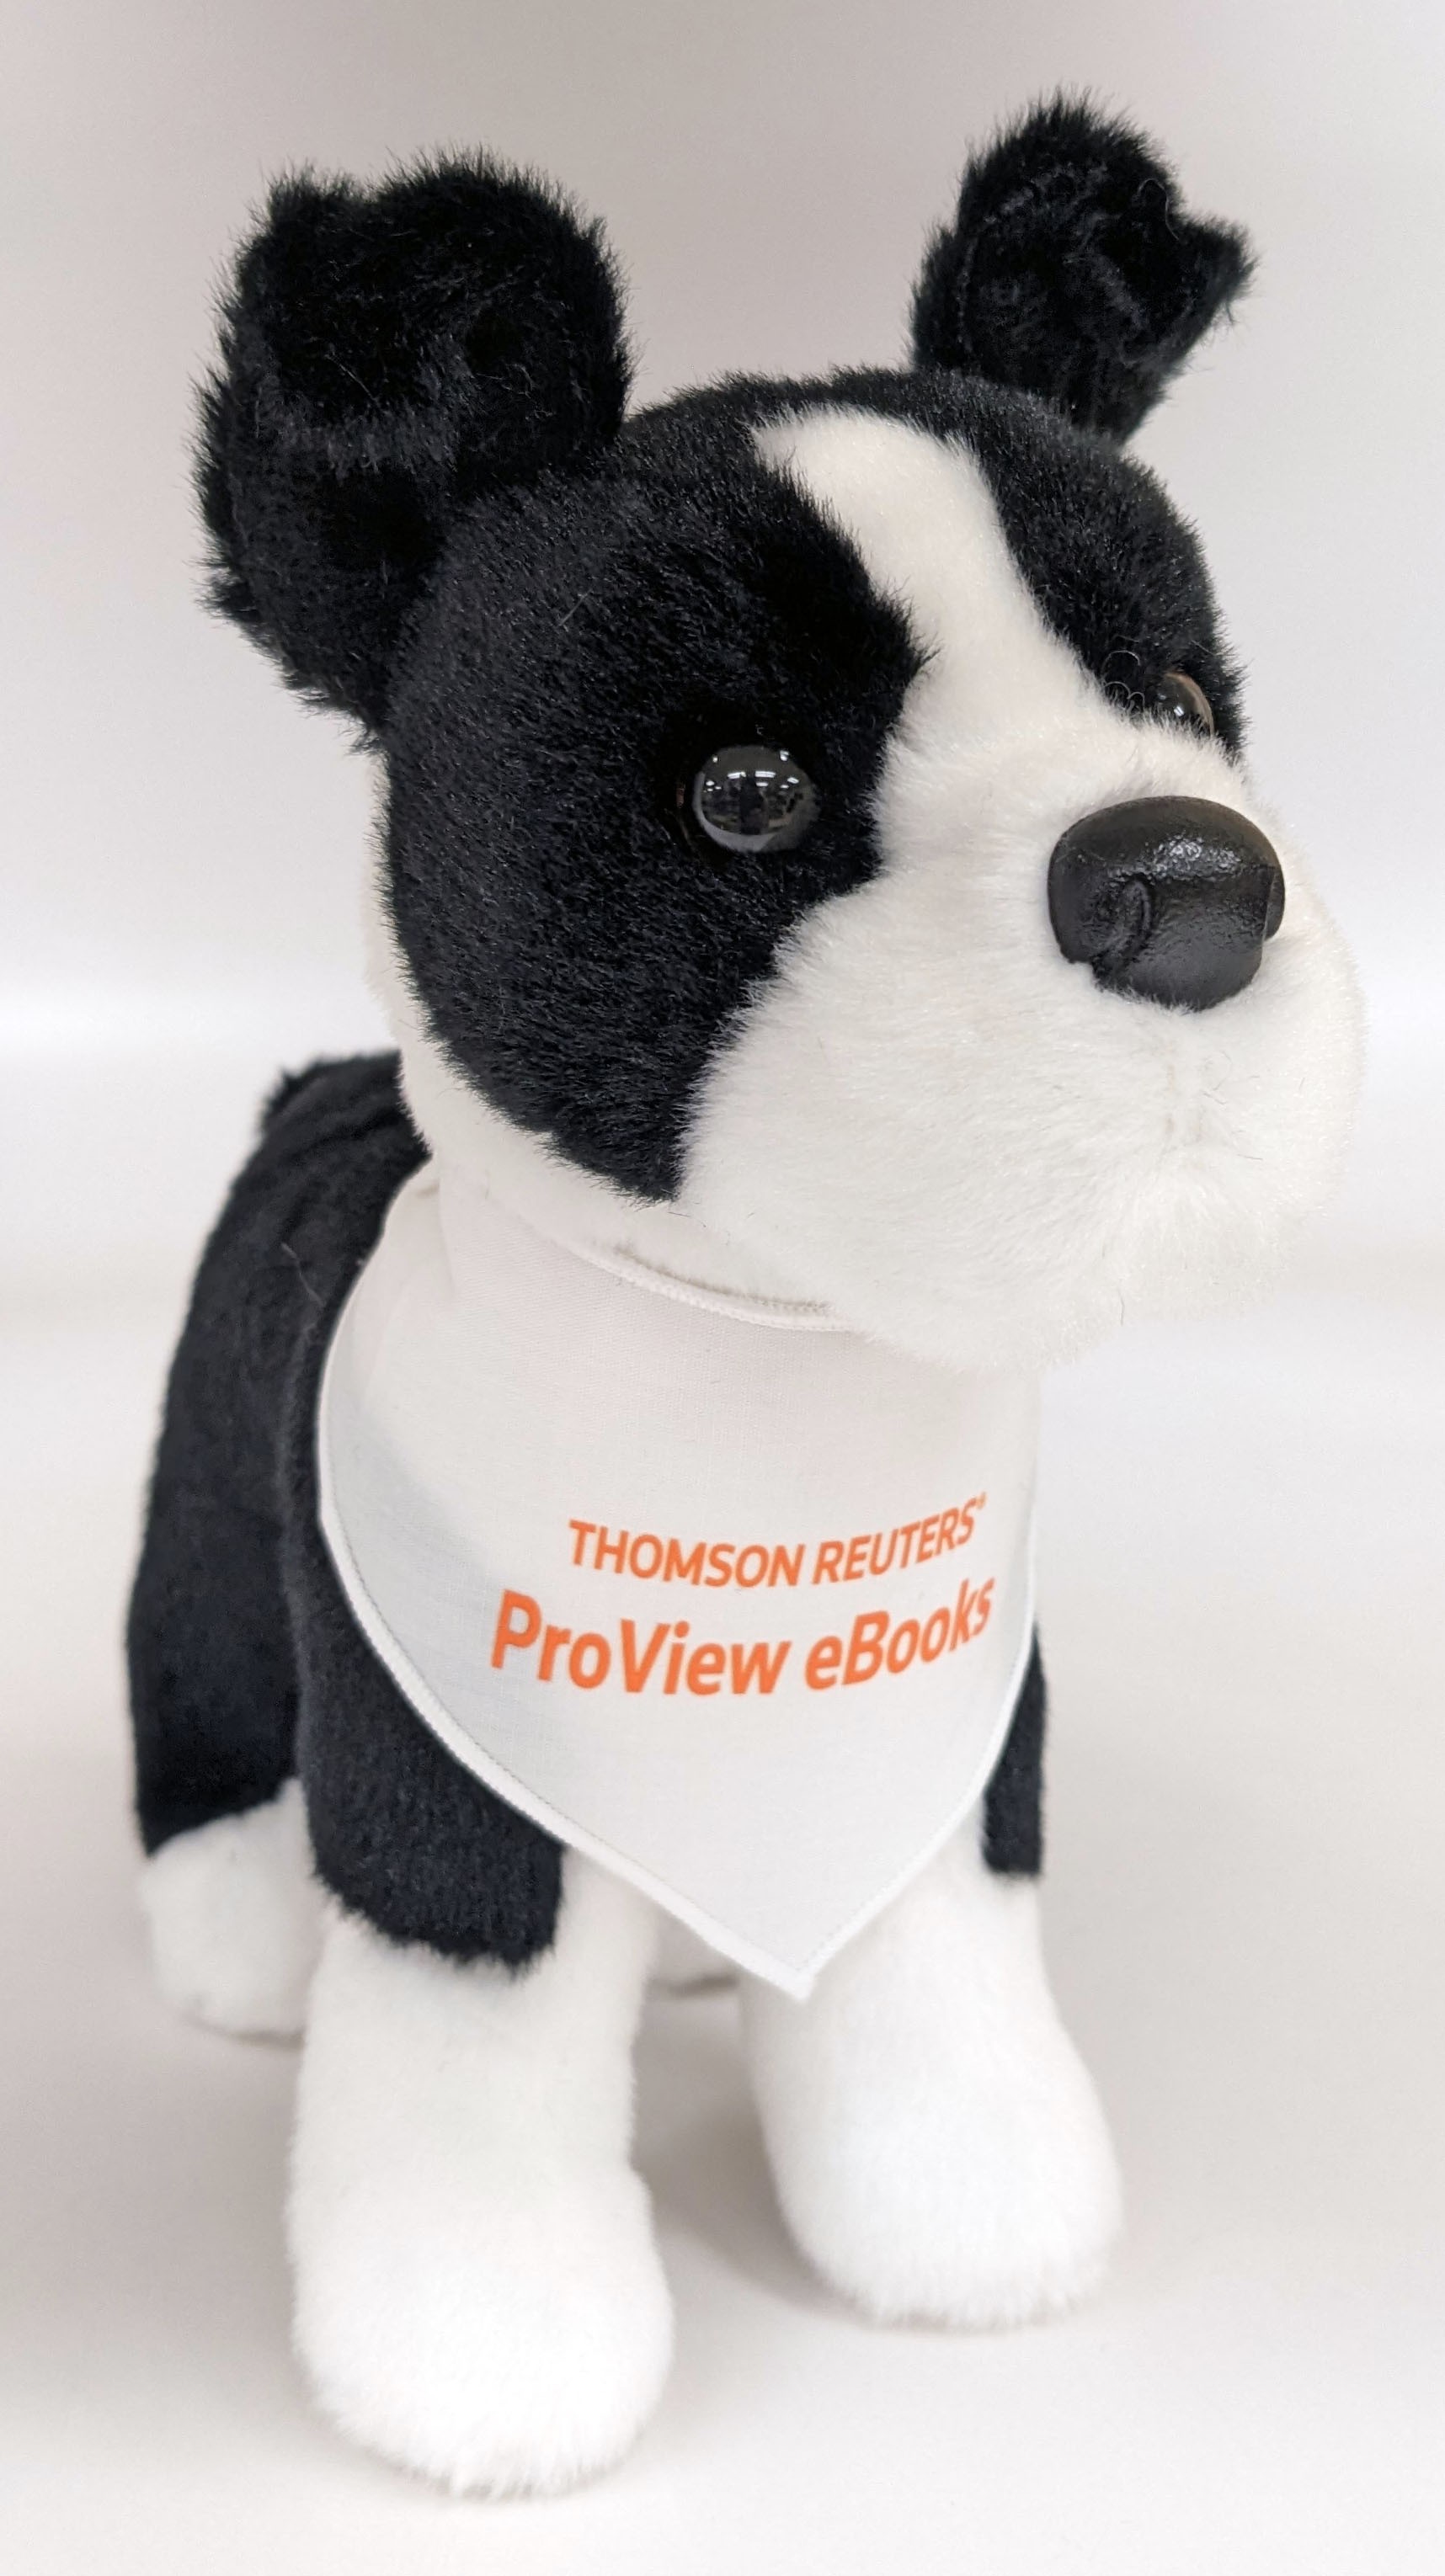 Stuffed dog toy wearing a Thomson Reuters ProView eBooks bandana.